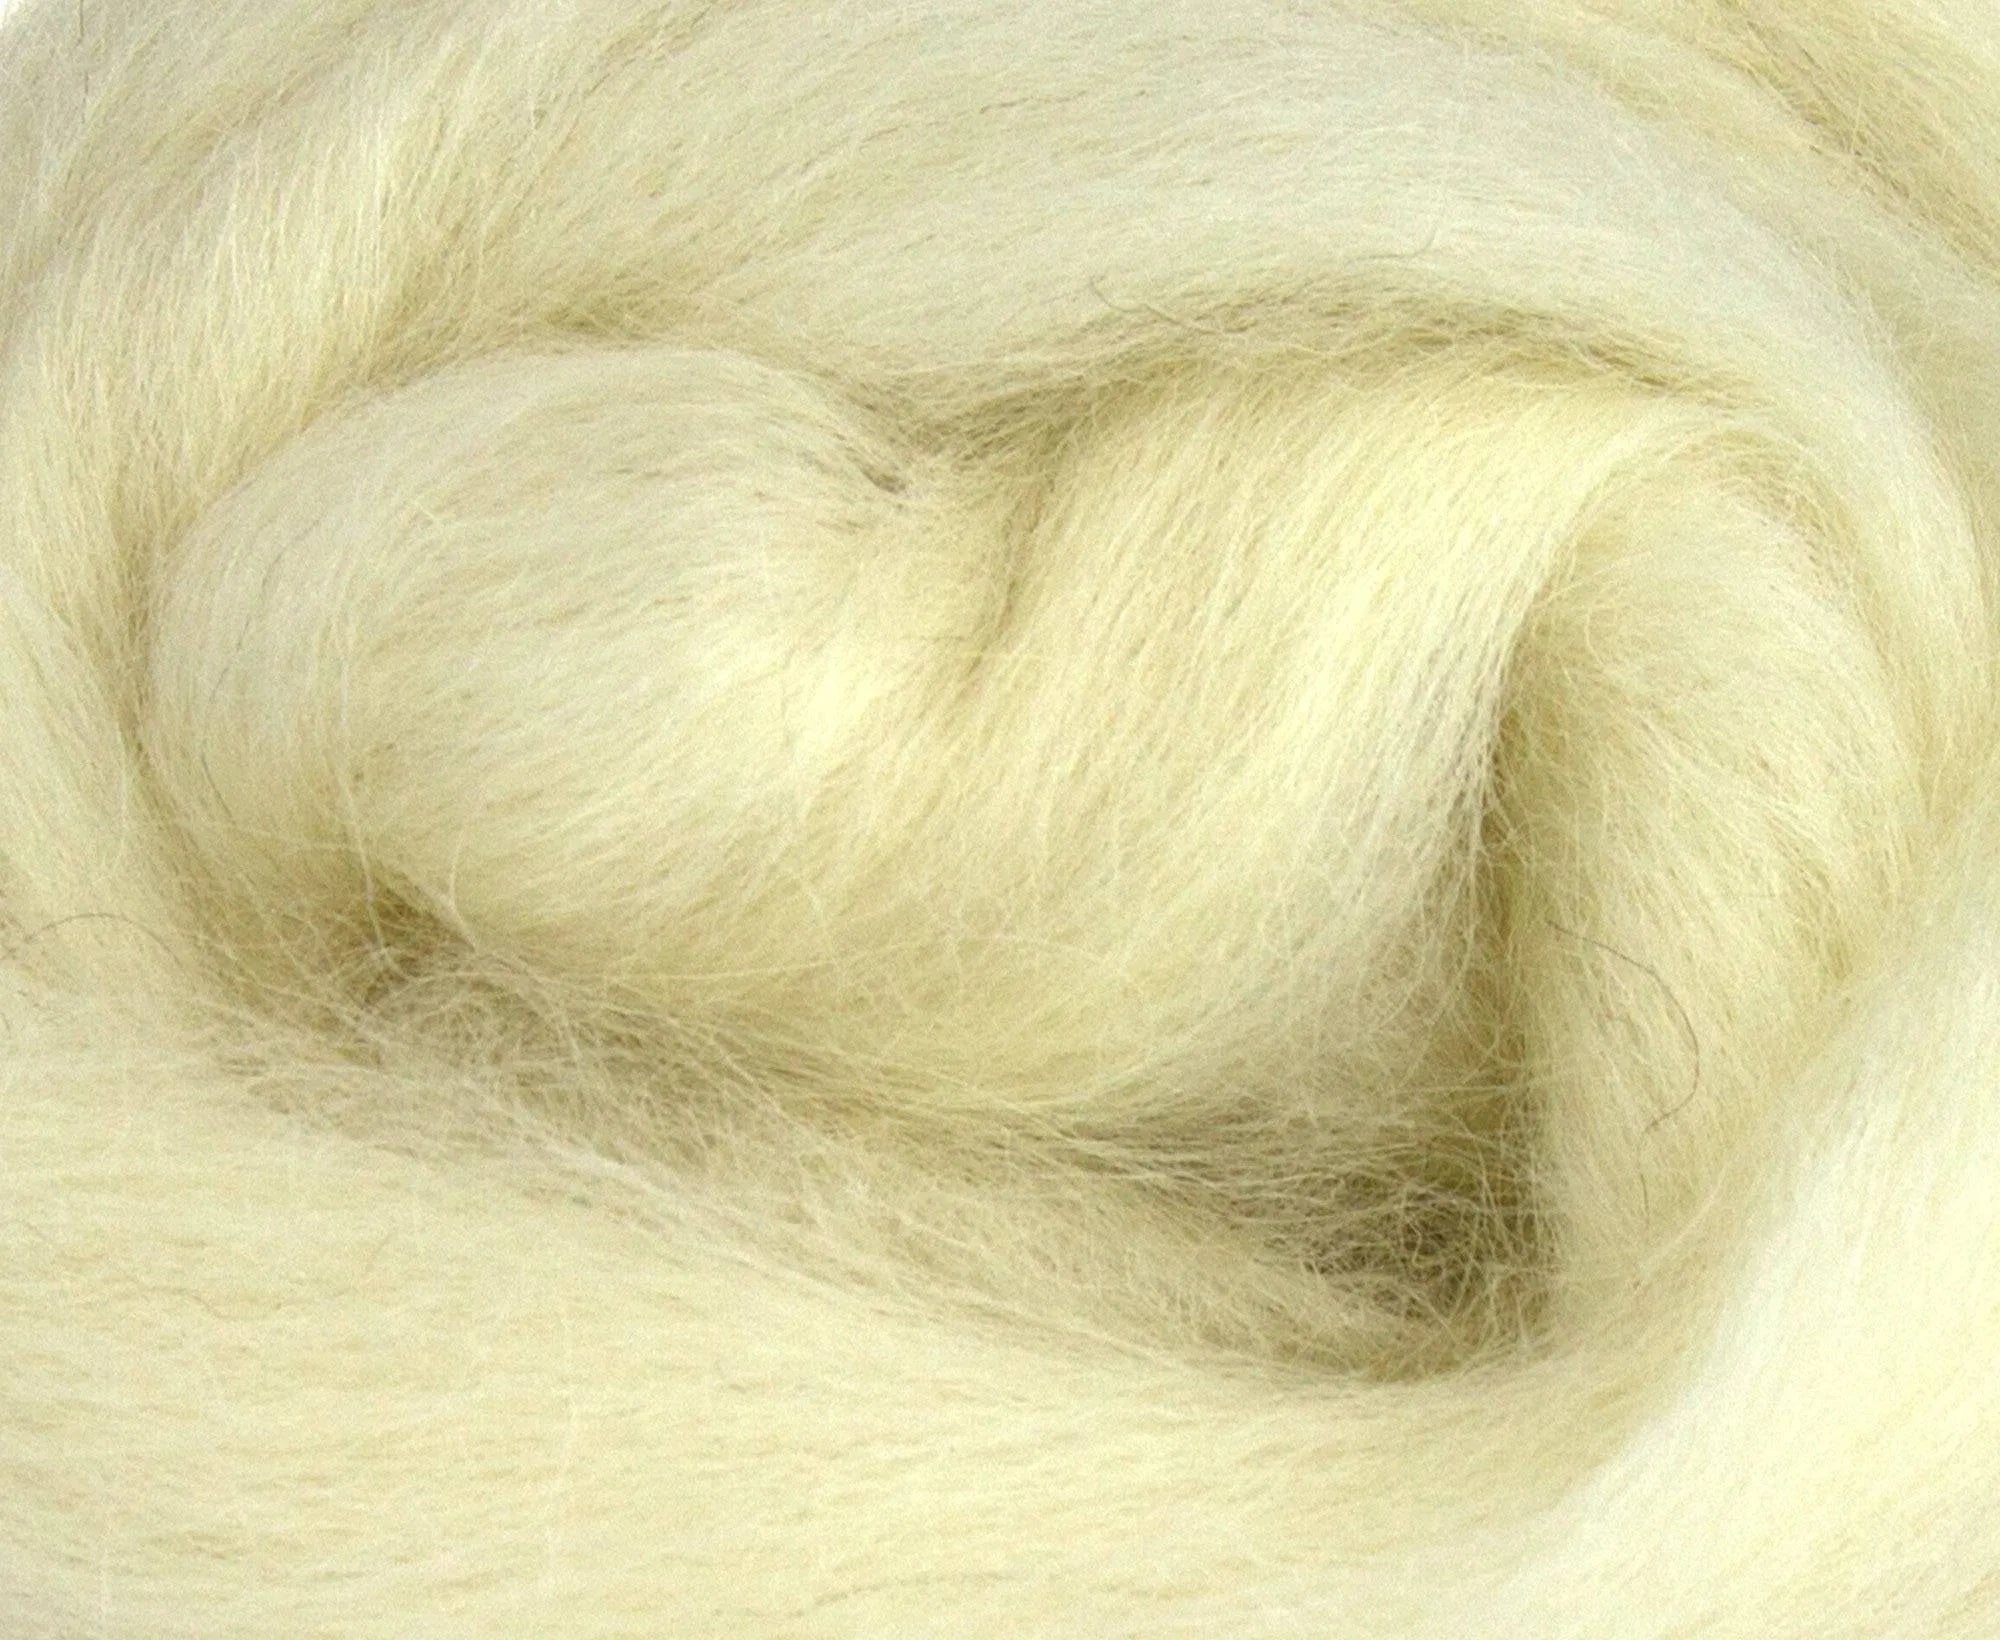 White Masham Top - World of Wool